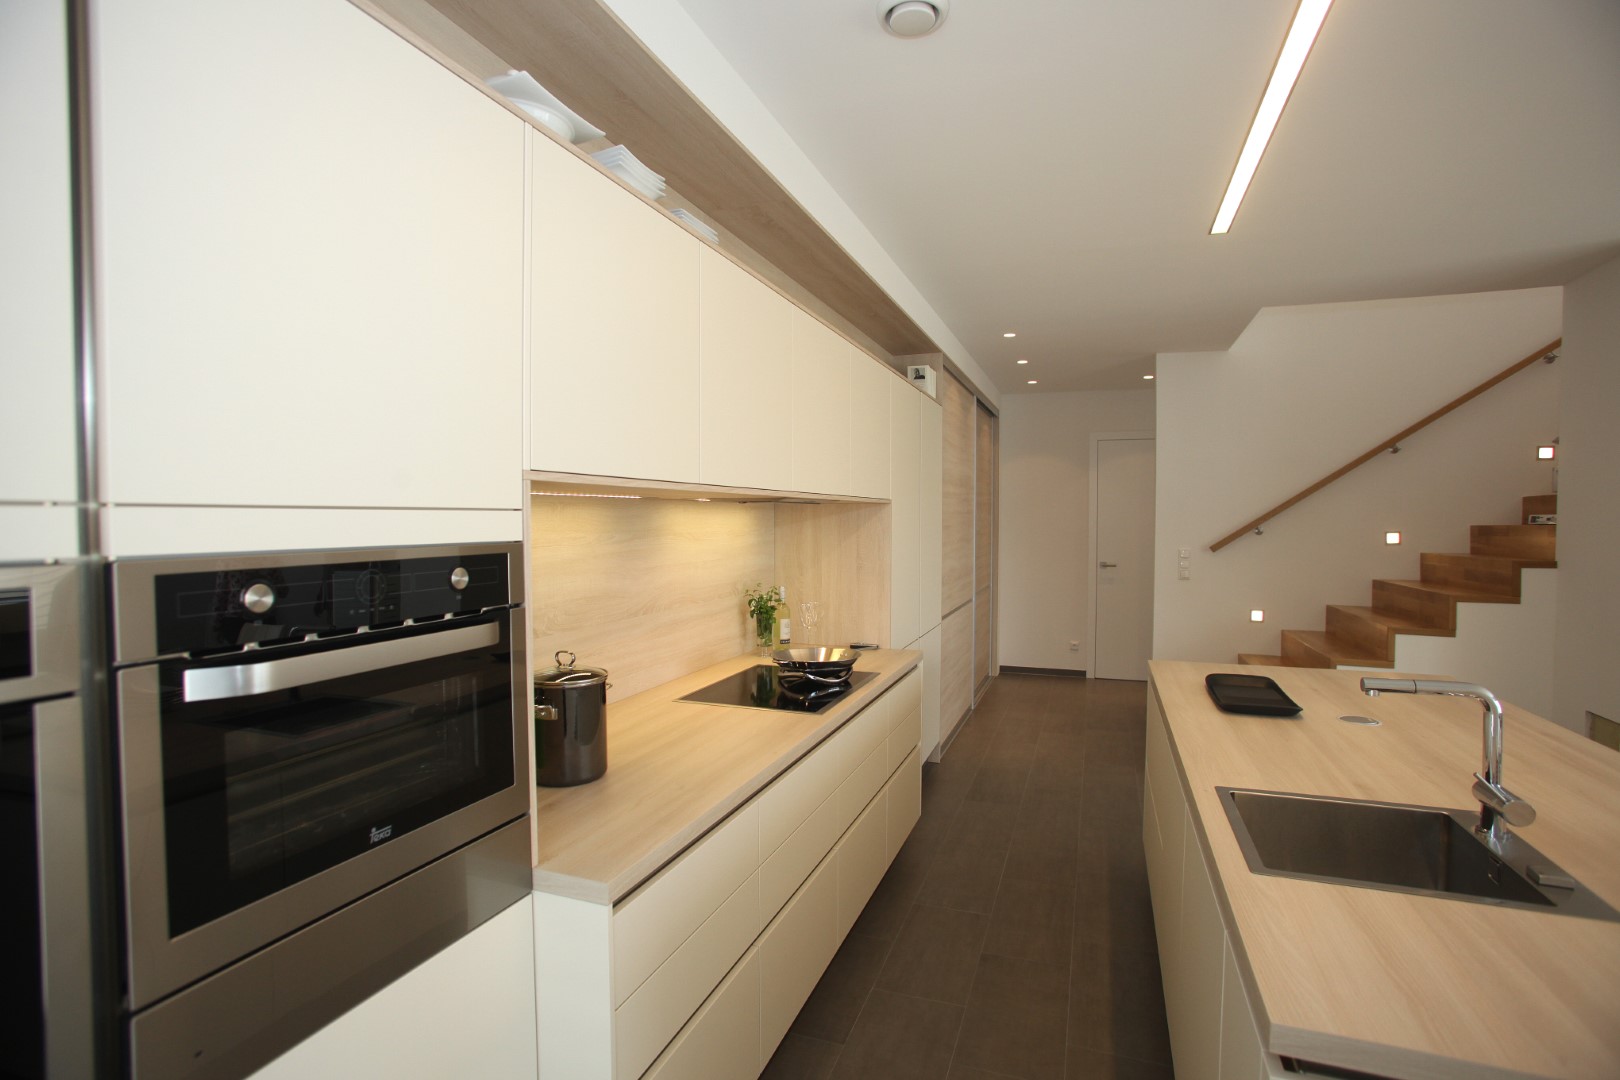 modern Innere Design, Küche und hell, geräumig Zimmer mit ein